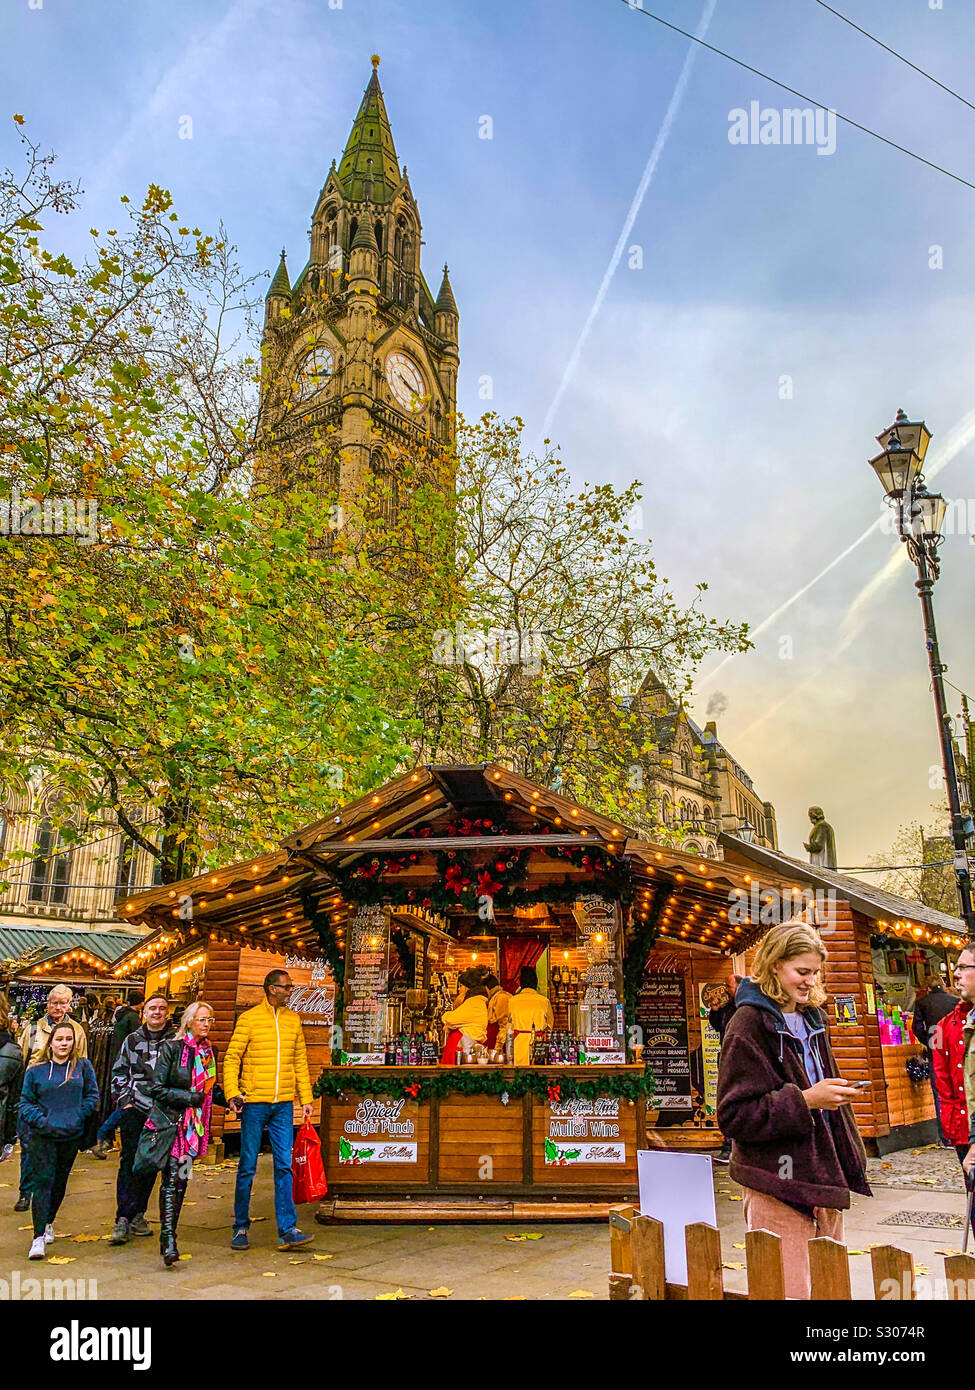 Marché de Noël de Manchester sur Albert Square avec Hôtel de ville en vue Banque D'Images